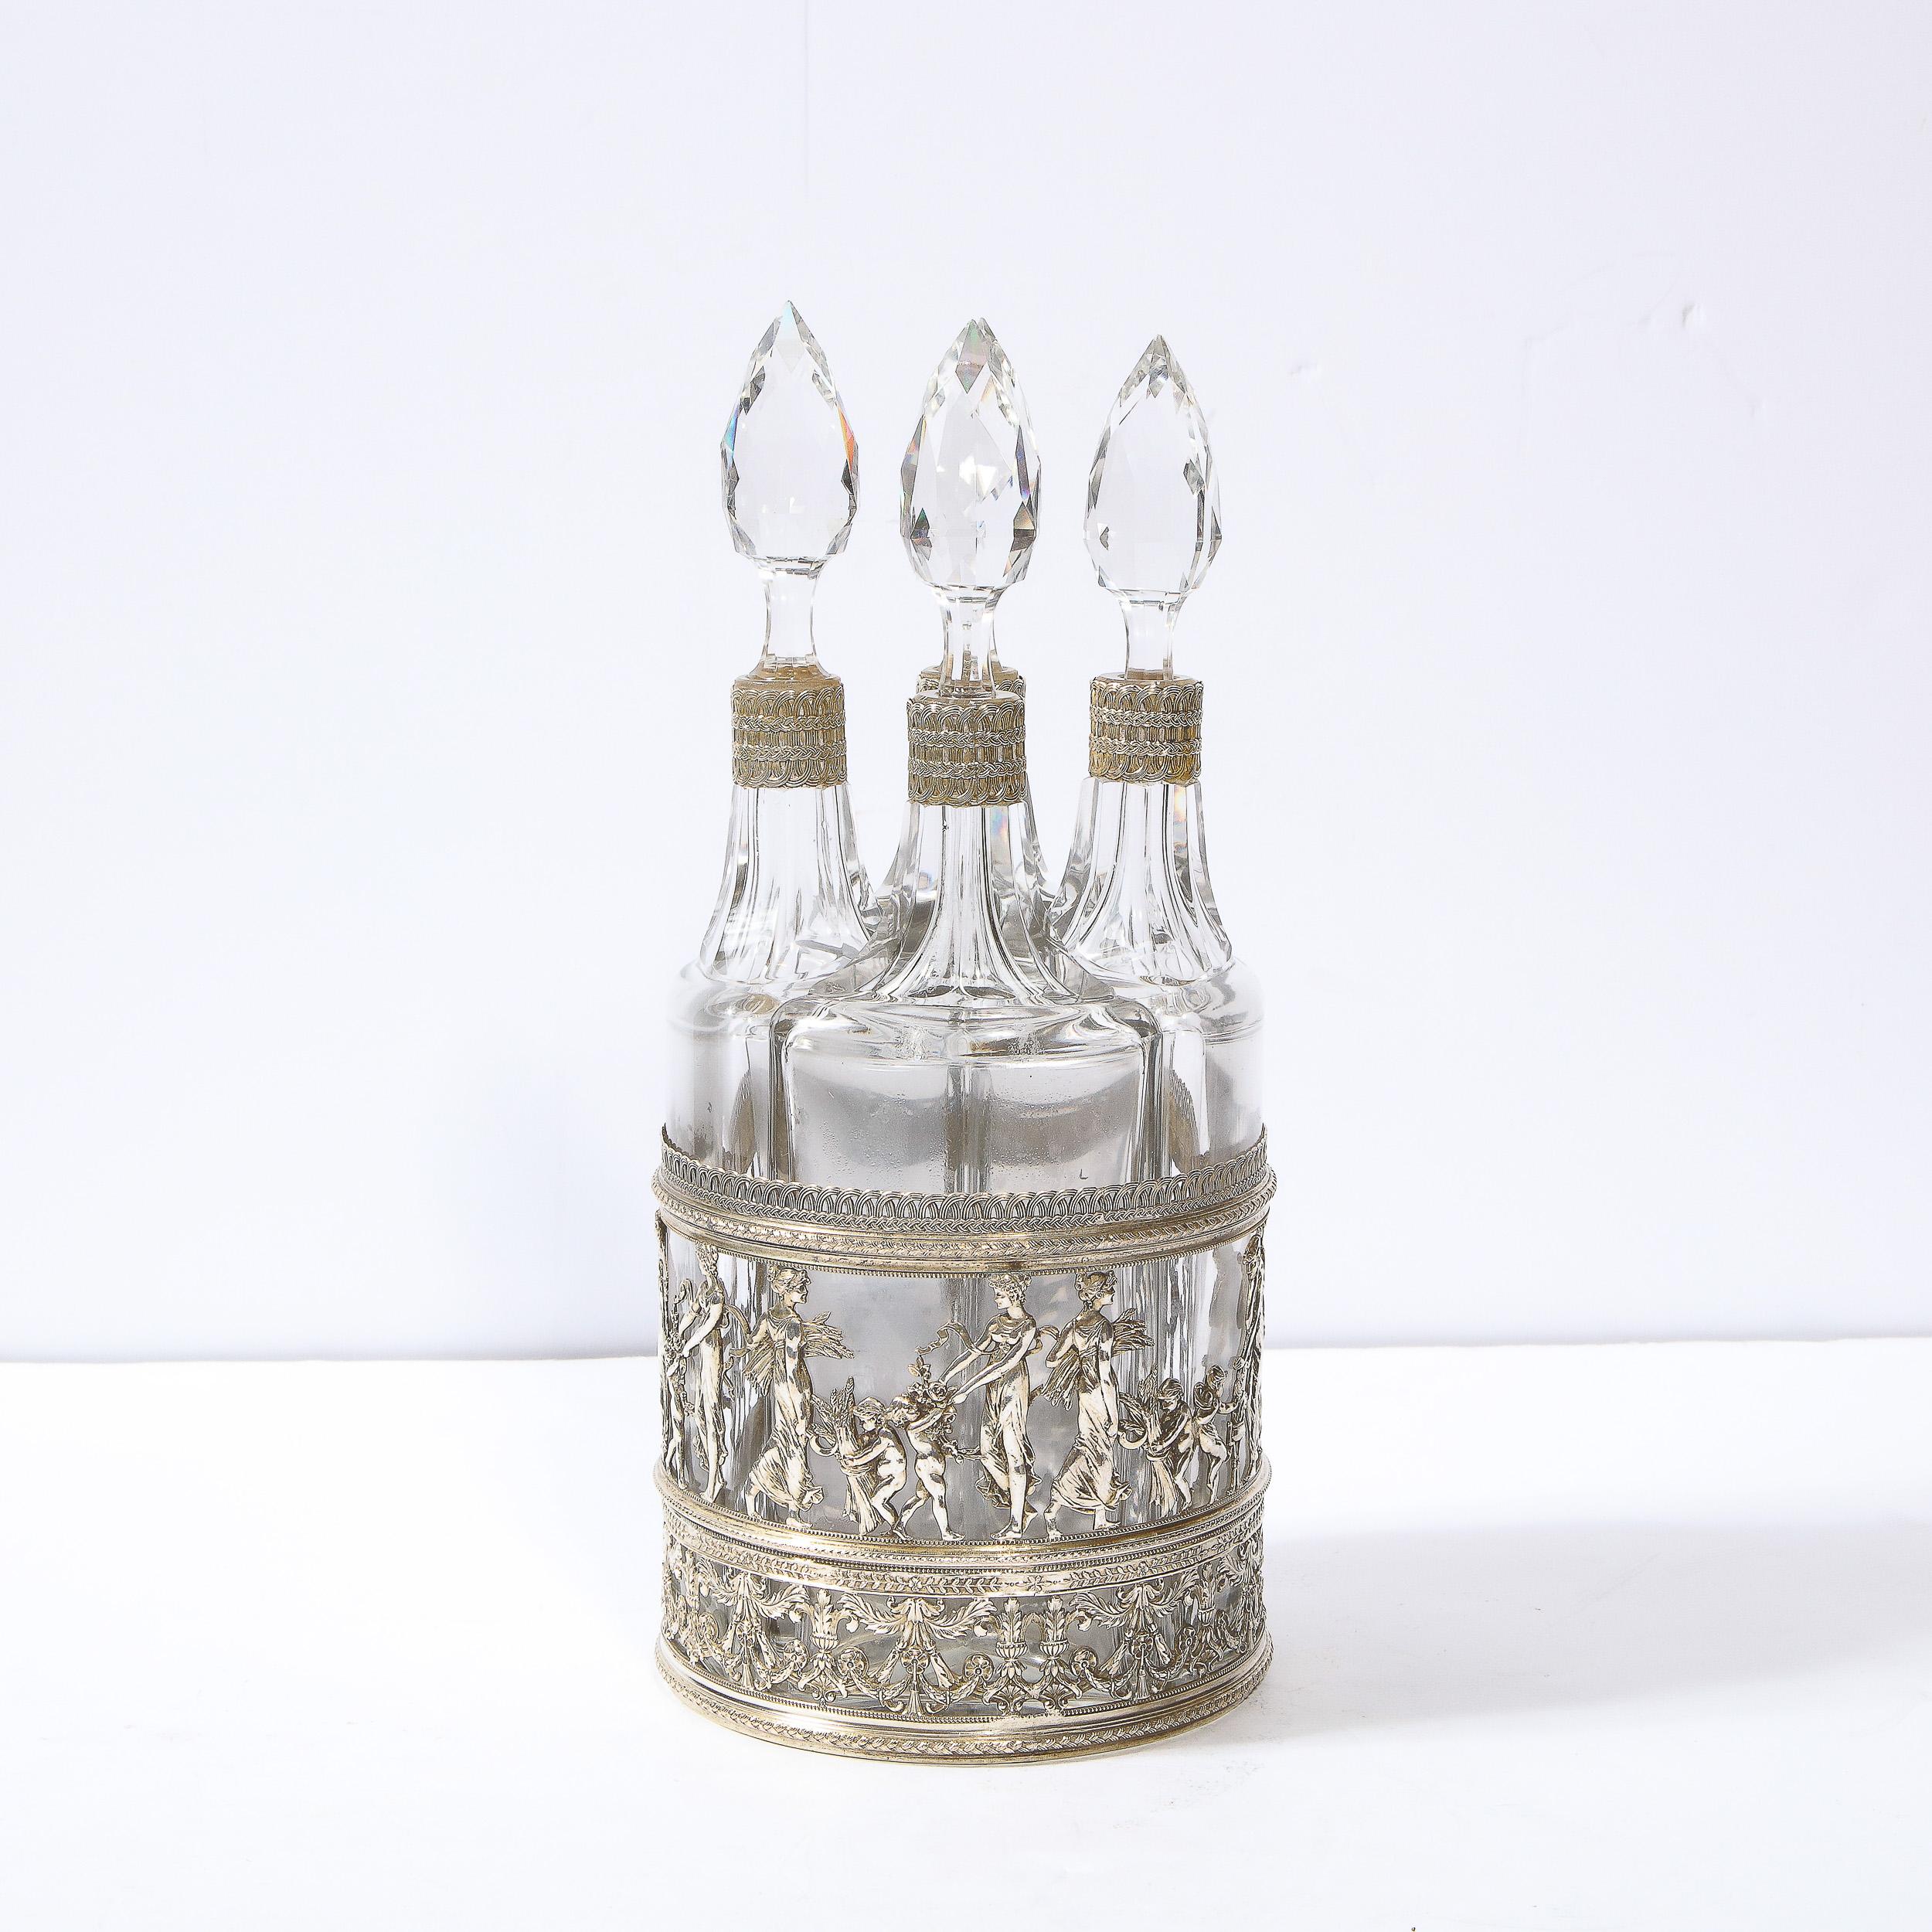 Dieses elegante und königliche Set aus Silberblech und geschliffenem Kristall wurde im England des 19. Jahrhunderts hergestellt. Der zylindrische Sockel ist mit einer Fülle von neoklassizistischen Reliefdetails versehen. Das unterste Band des